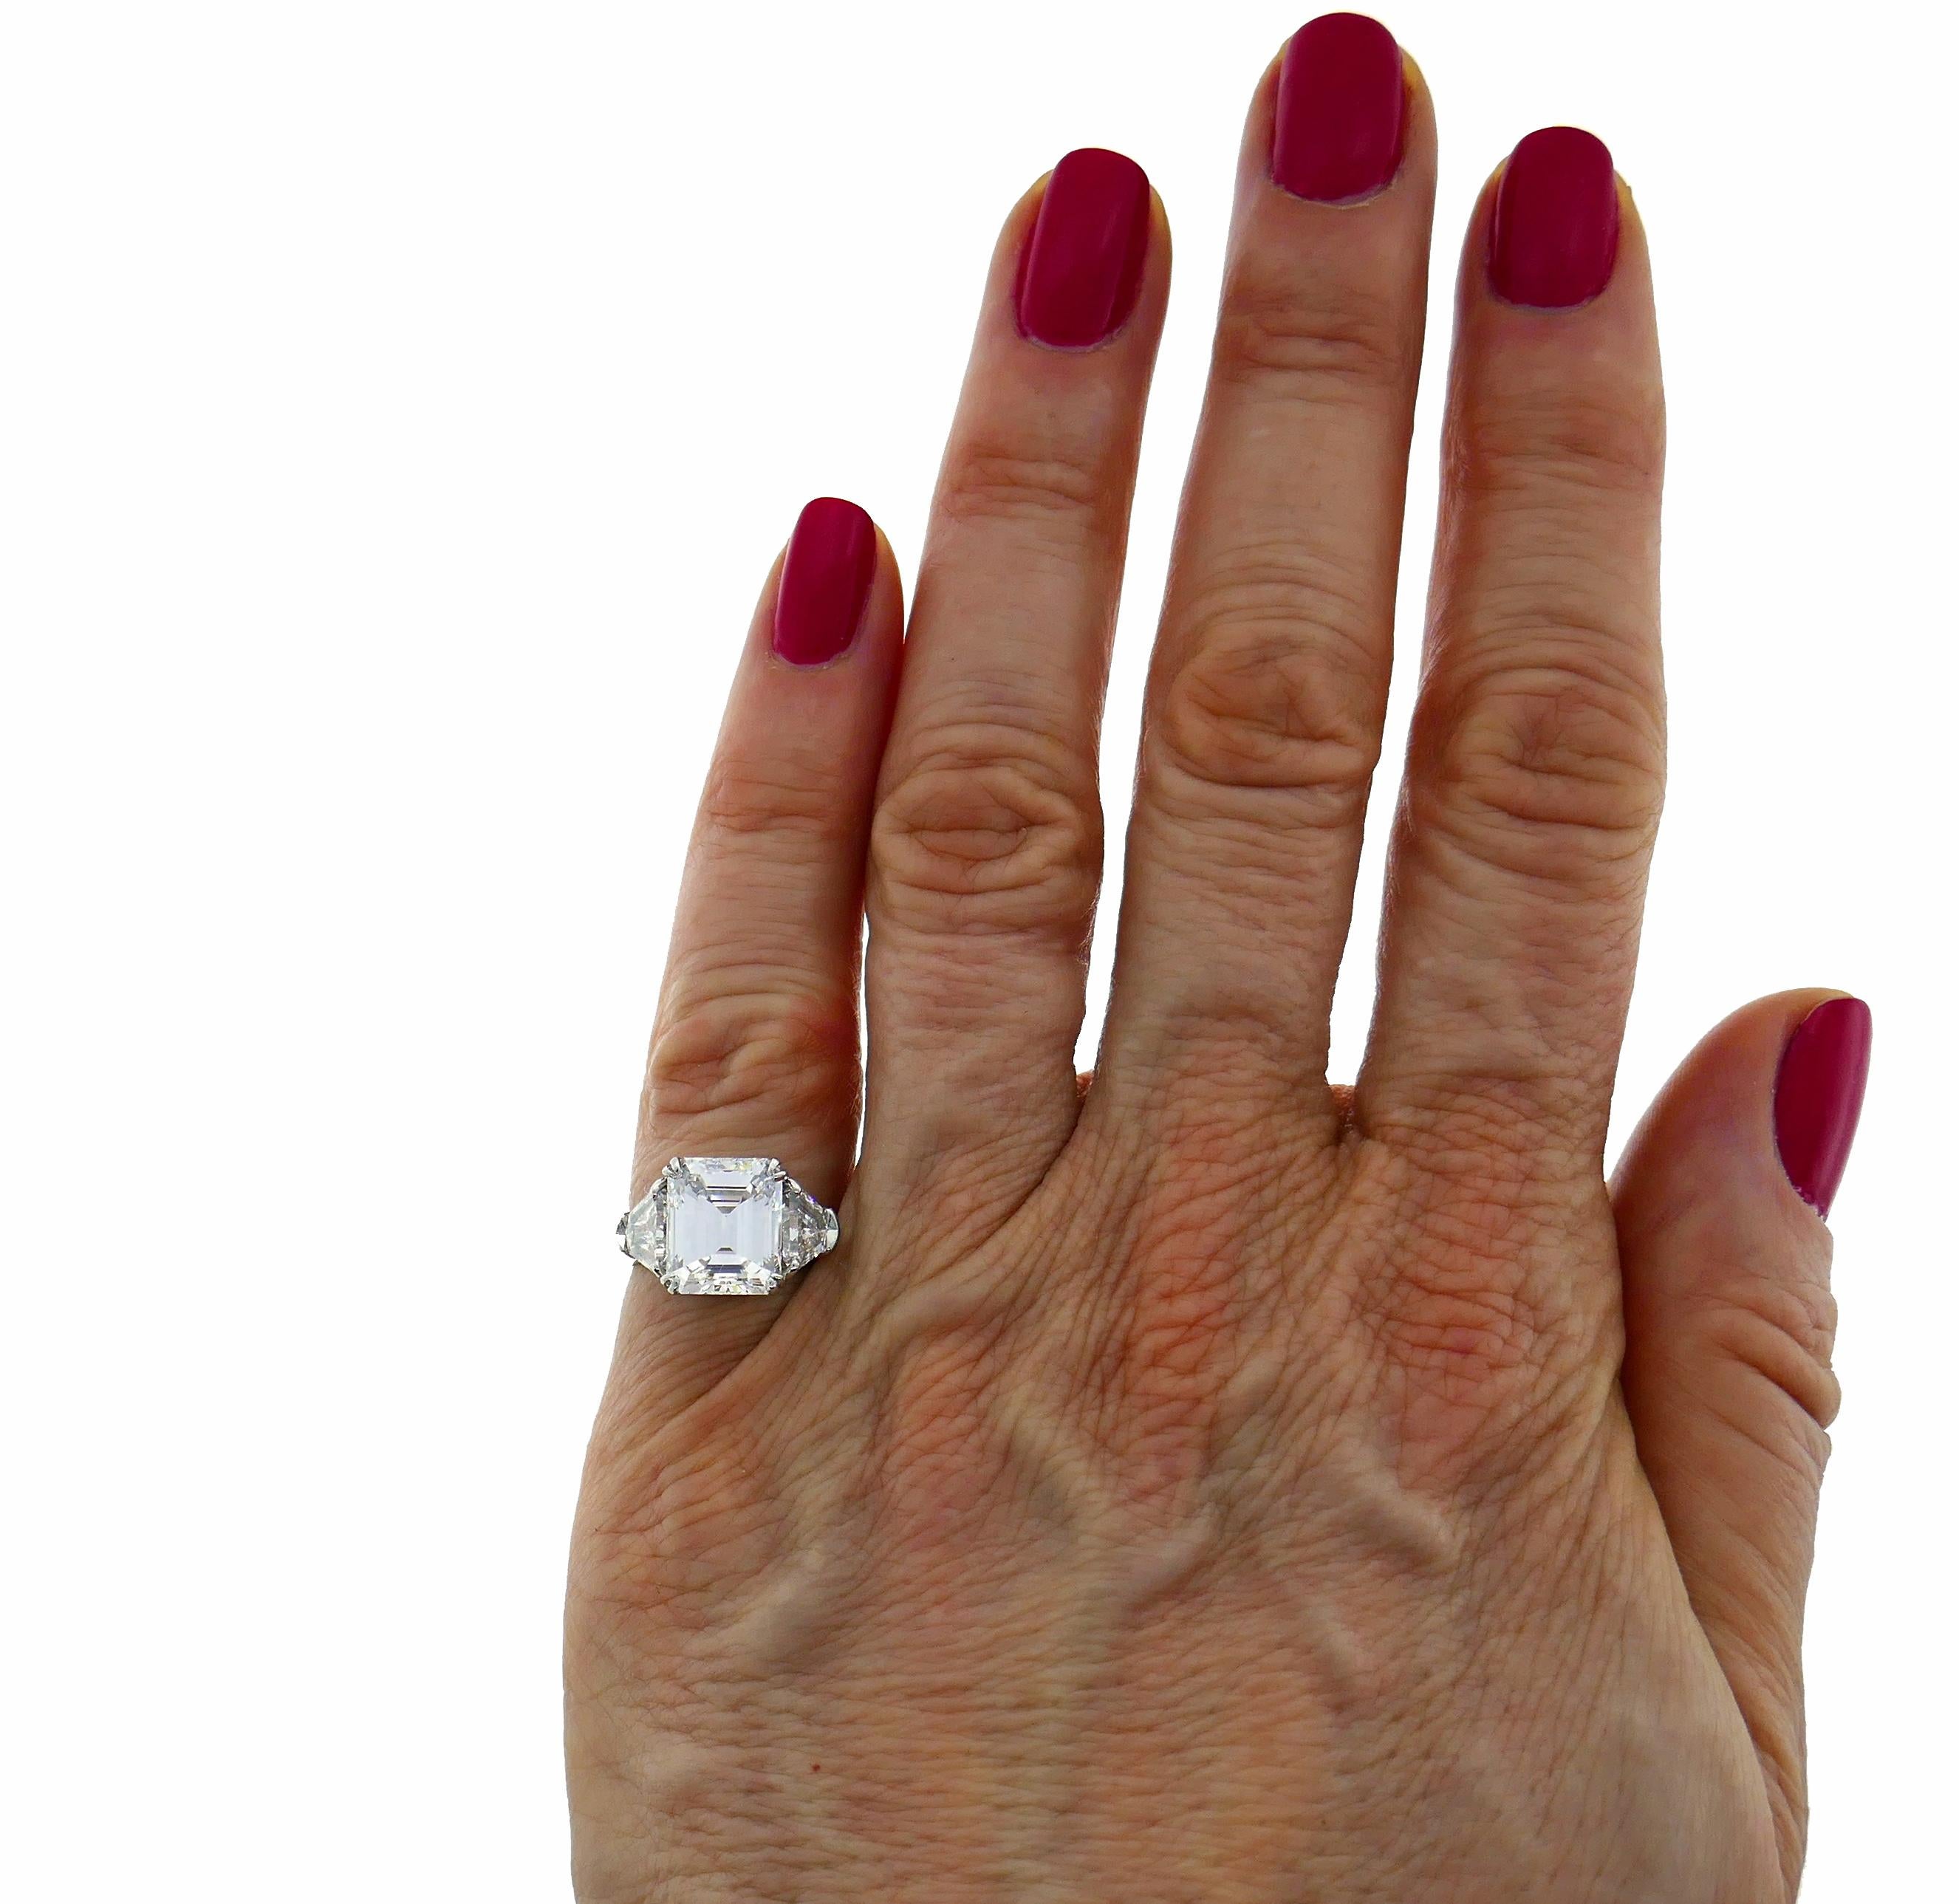 Zeitloser und eleganter Ring von Harry Winston. Klassisches Design, perfekte Proportionen, ein Diamant von höchster Qualität!
Der Ring ist aus Platin gefertigt und verfügt über einen herrlichen 4,03-Karat-Diamanten im Smaragdschliff, der von einem